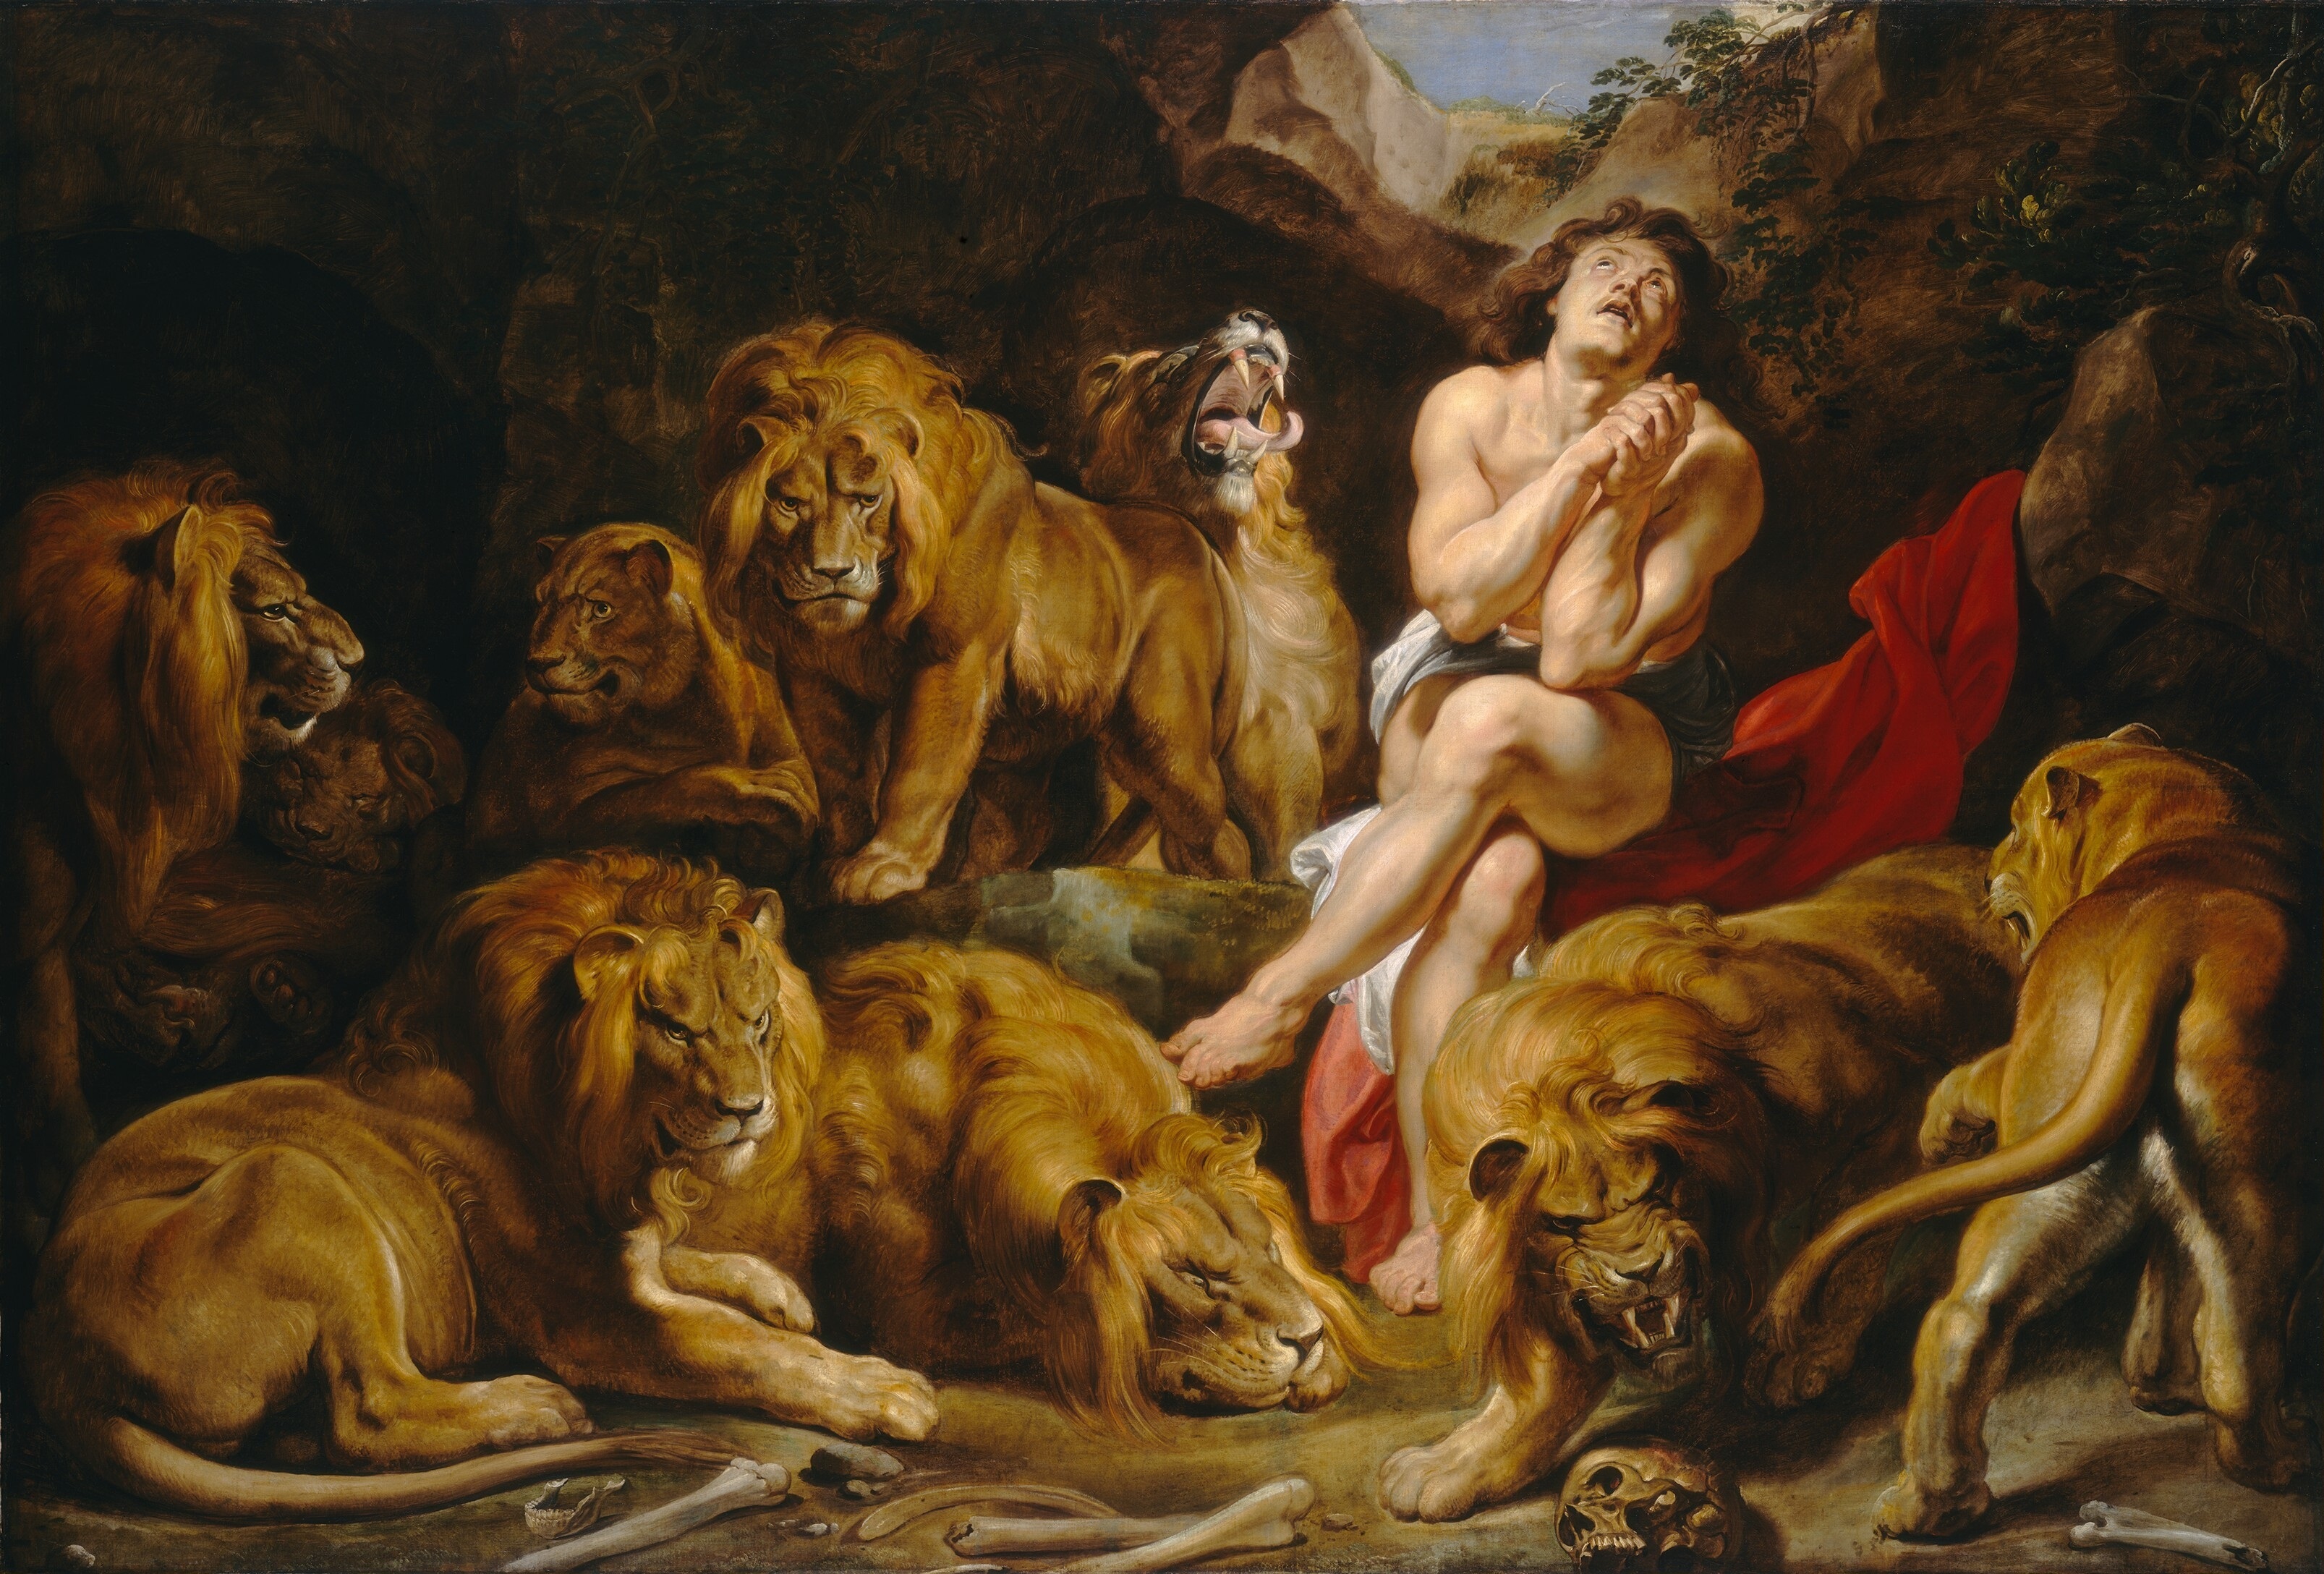 Aslanların İninde Daniel by Peter Paul Rubens - c. 1614/1616 - 224.2 x 330.5 cm 